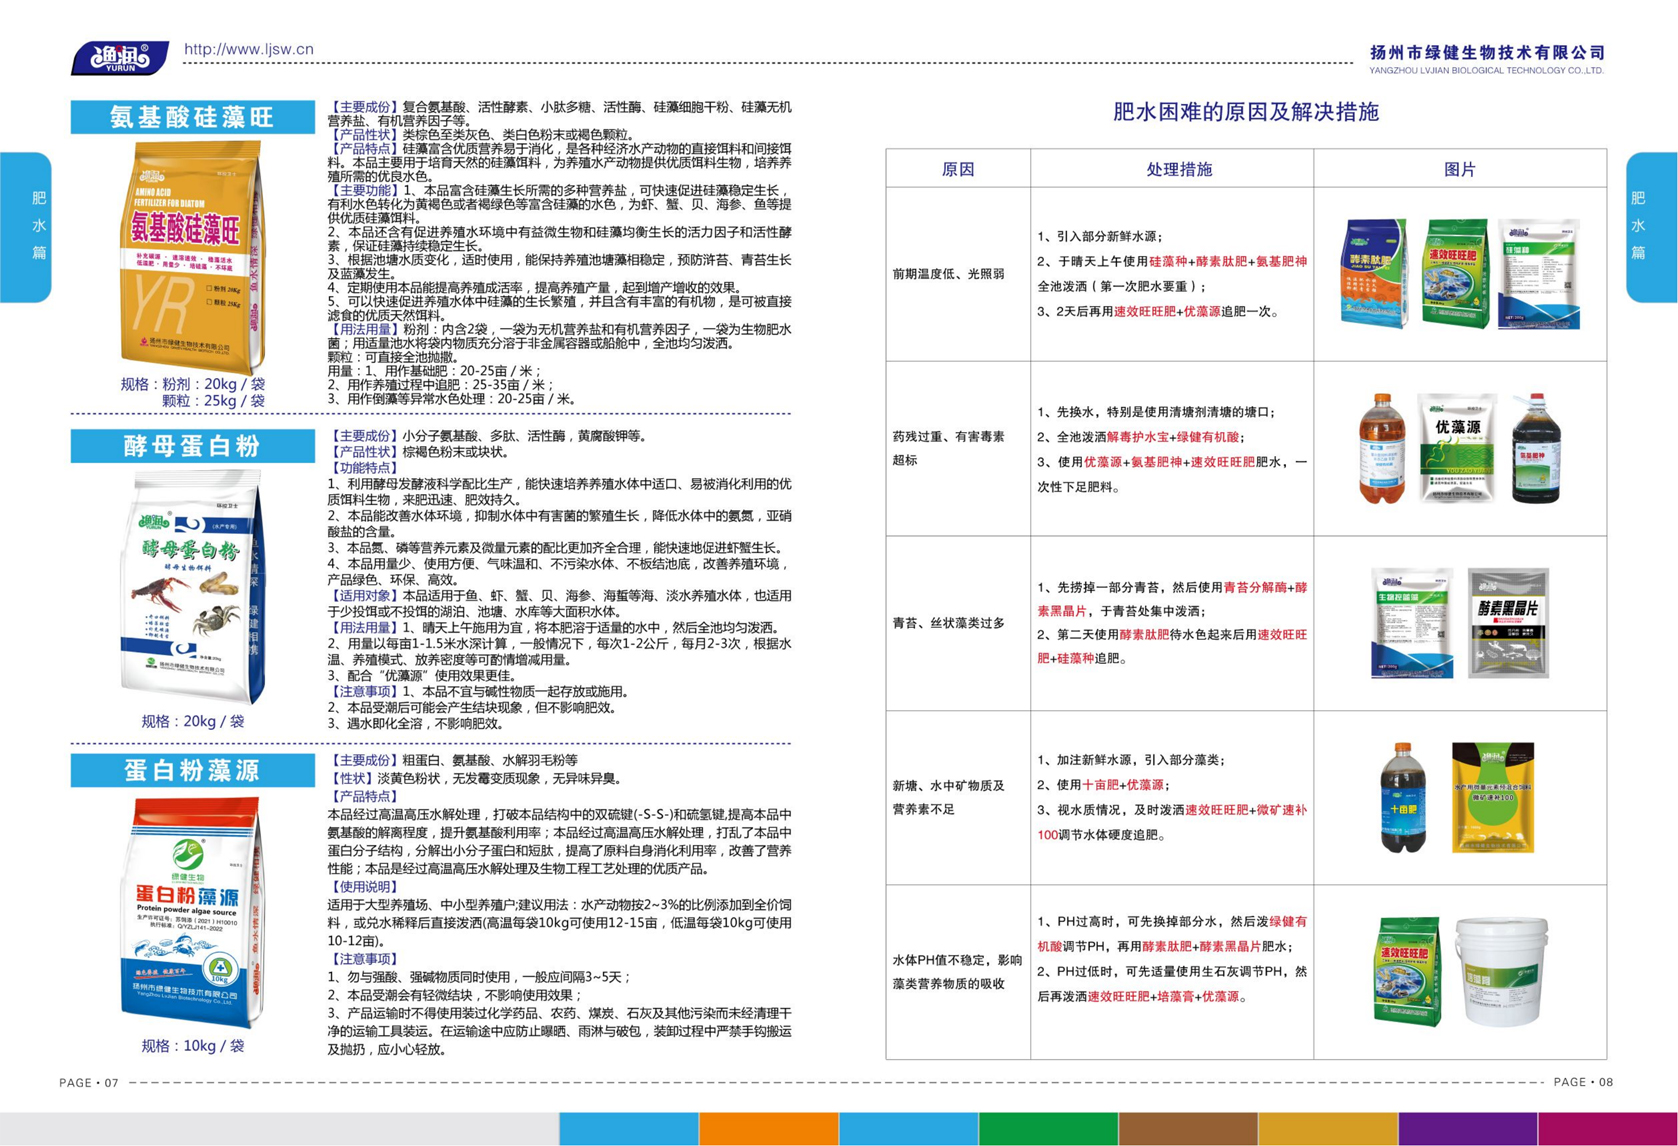 揚州市綠健生物技術有限公司第6版產品手冊_05